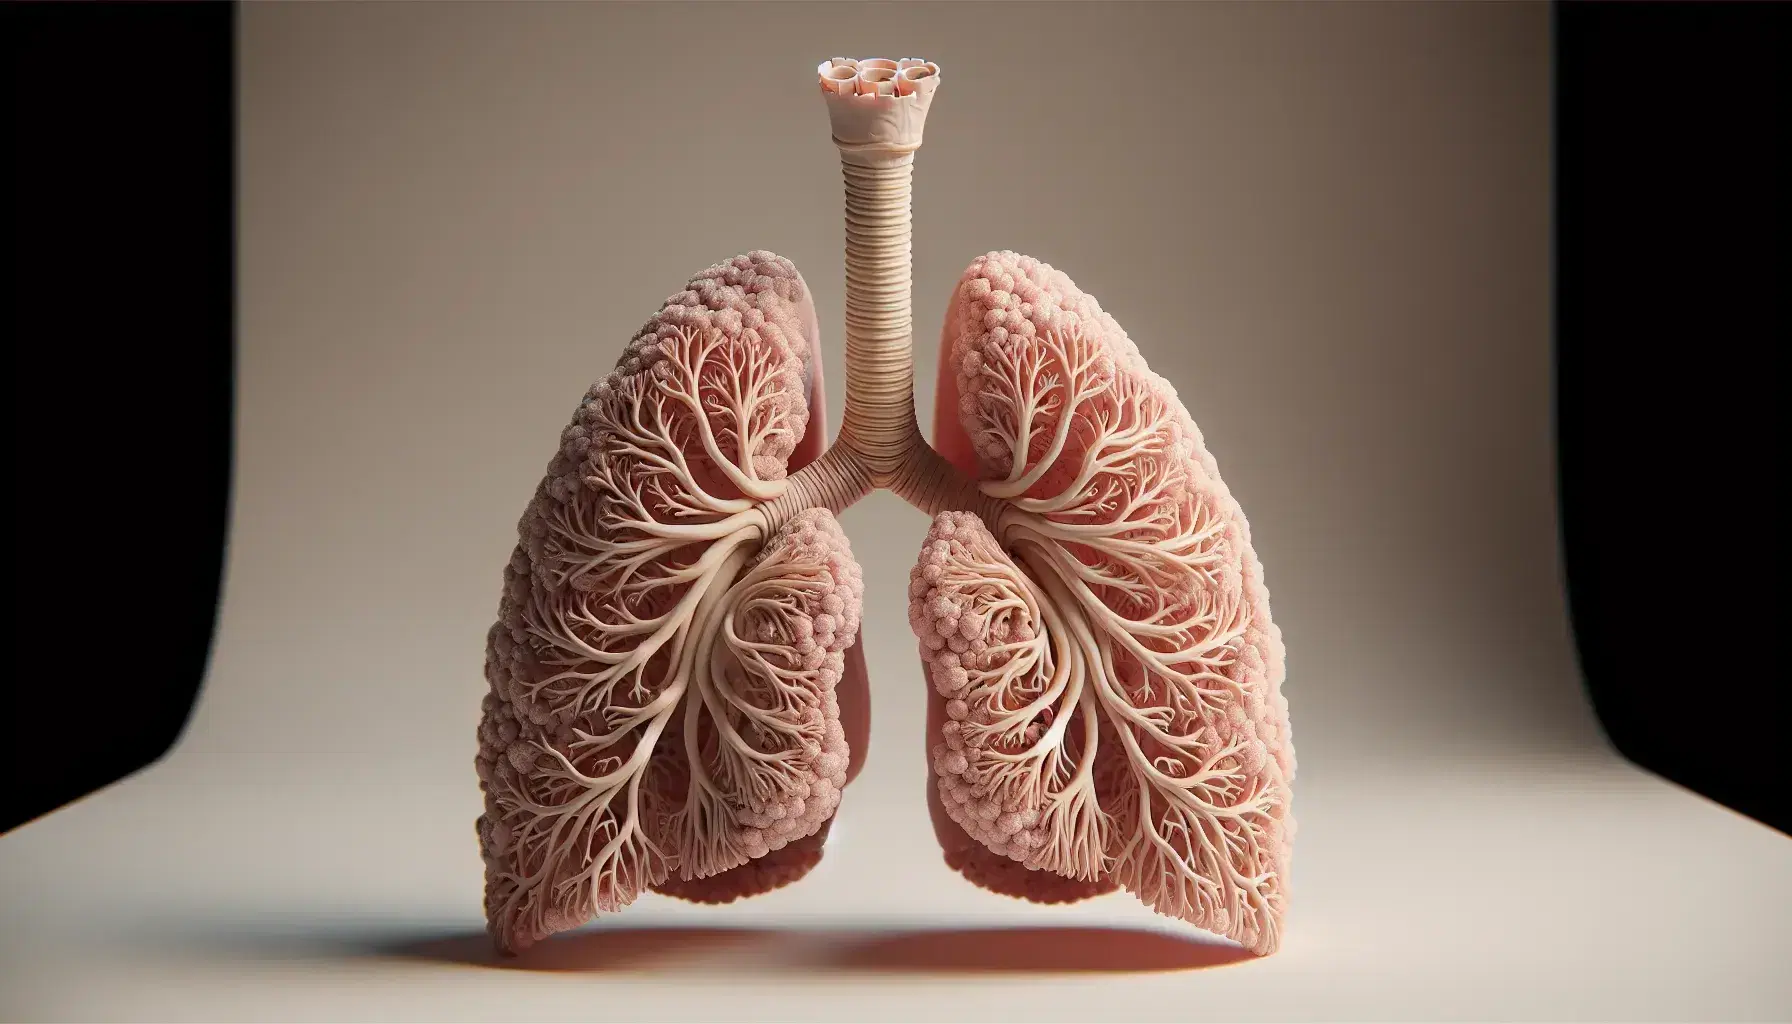 Modelo anatómico detallado del sistema respiratorio humano mostrando pulmones, bronquios y tráquea en tonos rosados y grises sobre fondo neutro.